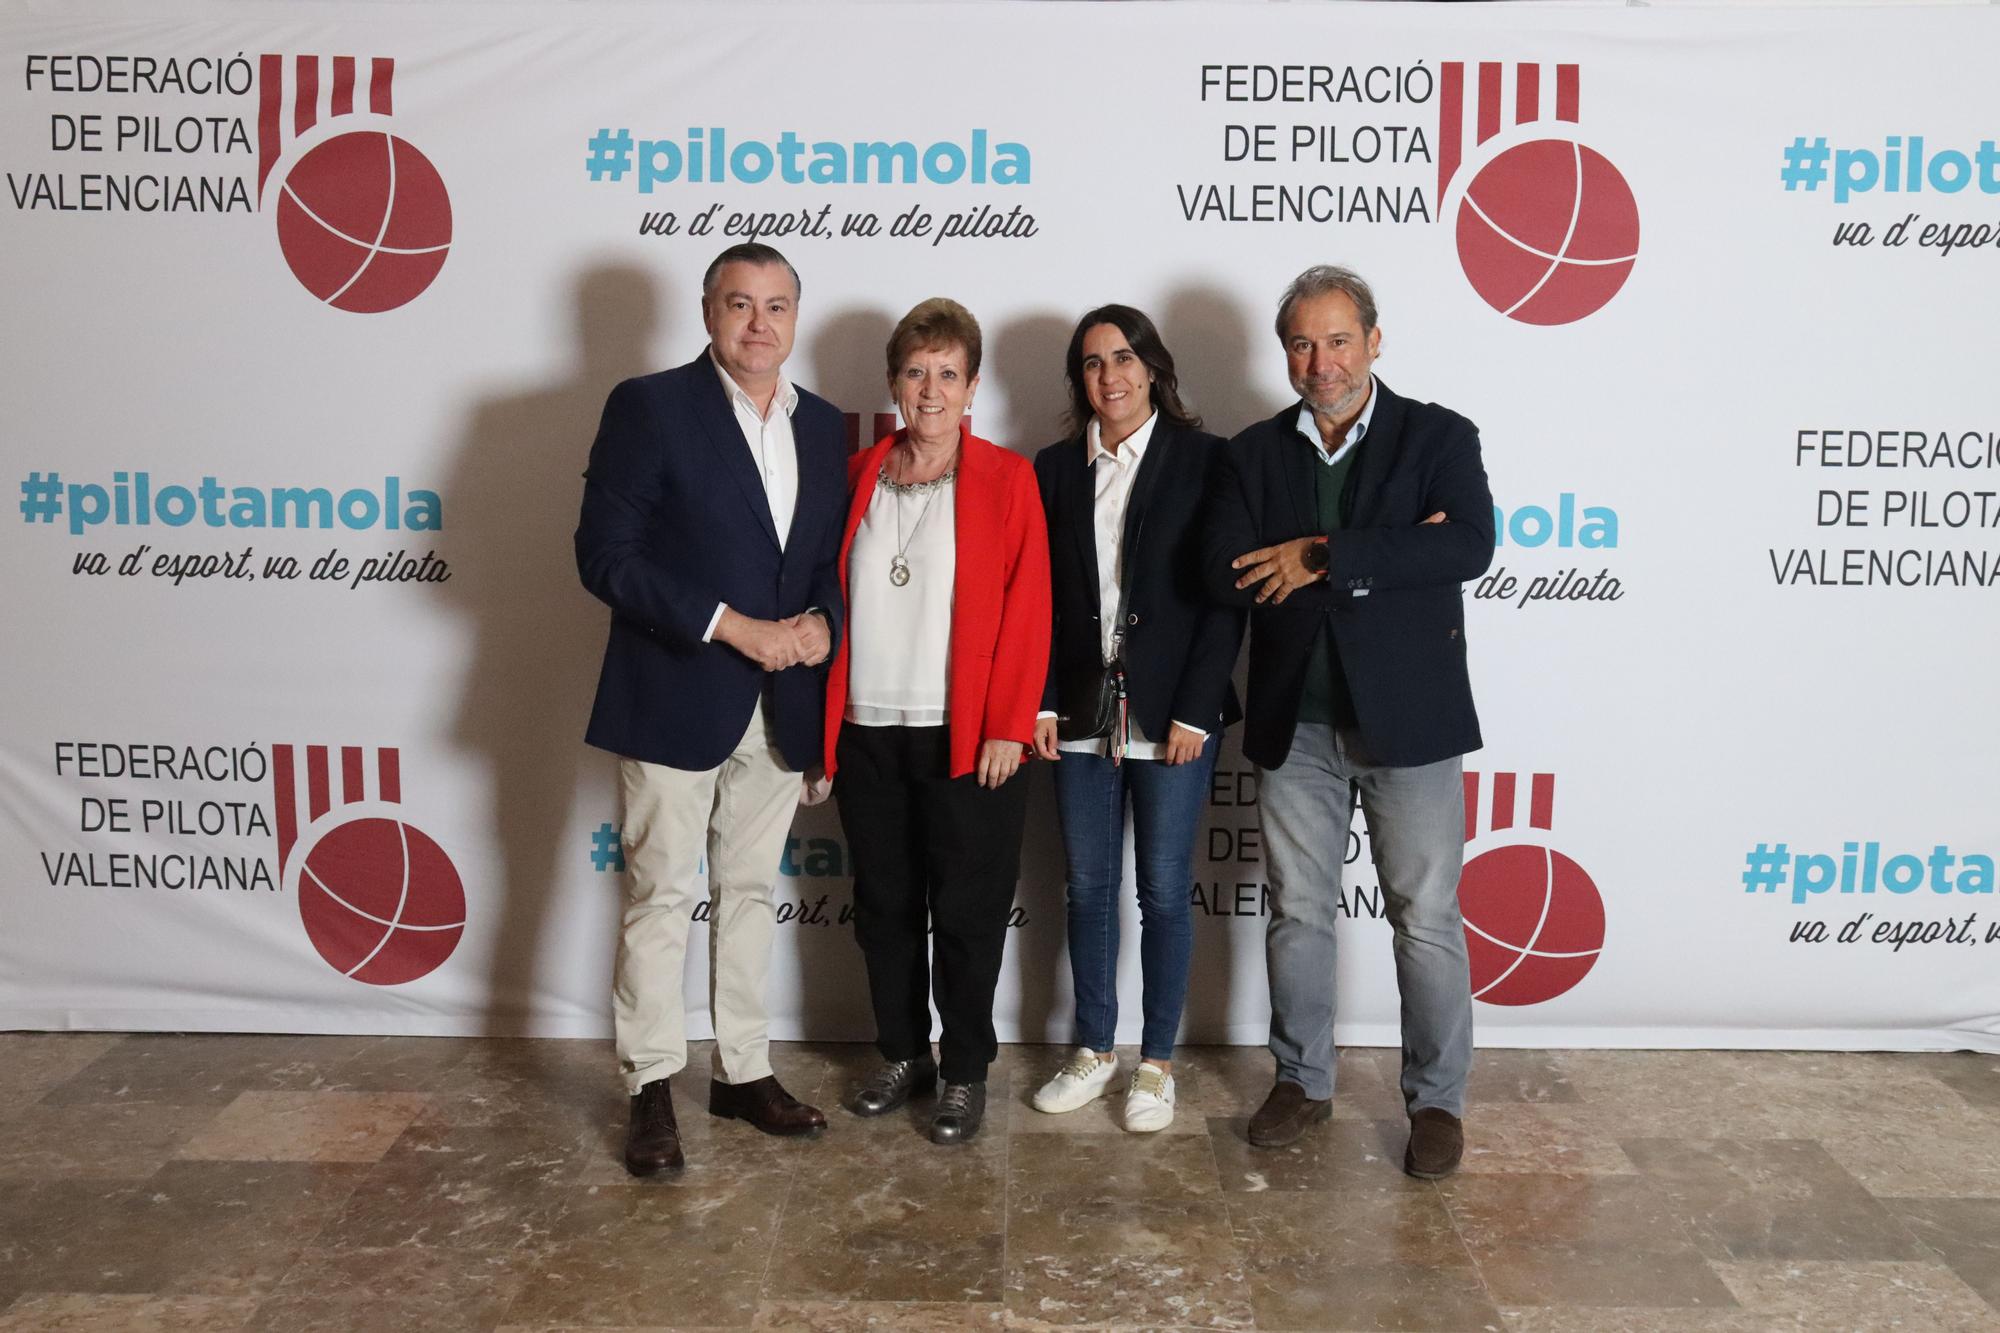 FOTO 18 - Jaime Casas, de CaixaBank, amb l'alcaldessa d'el Puig, Luisa Salvador, la regidora Tonica Martí i l'acompanyant de Casas.JPG